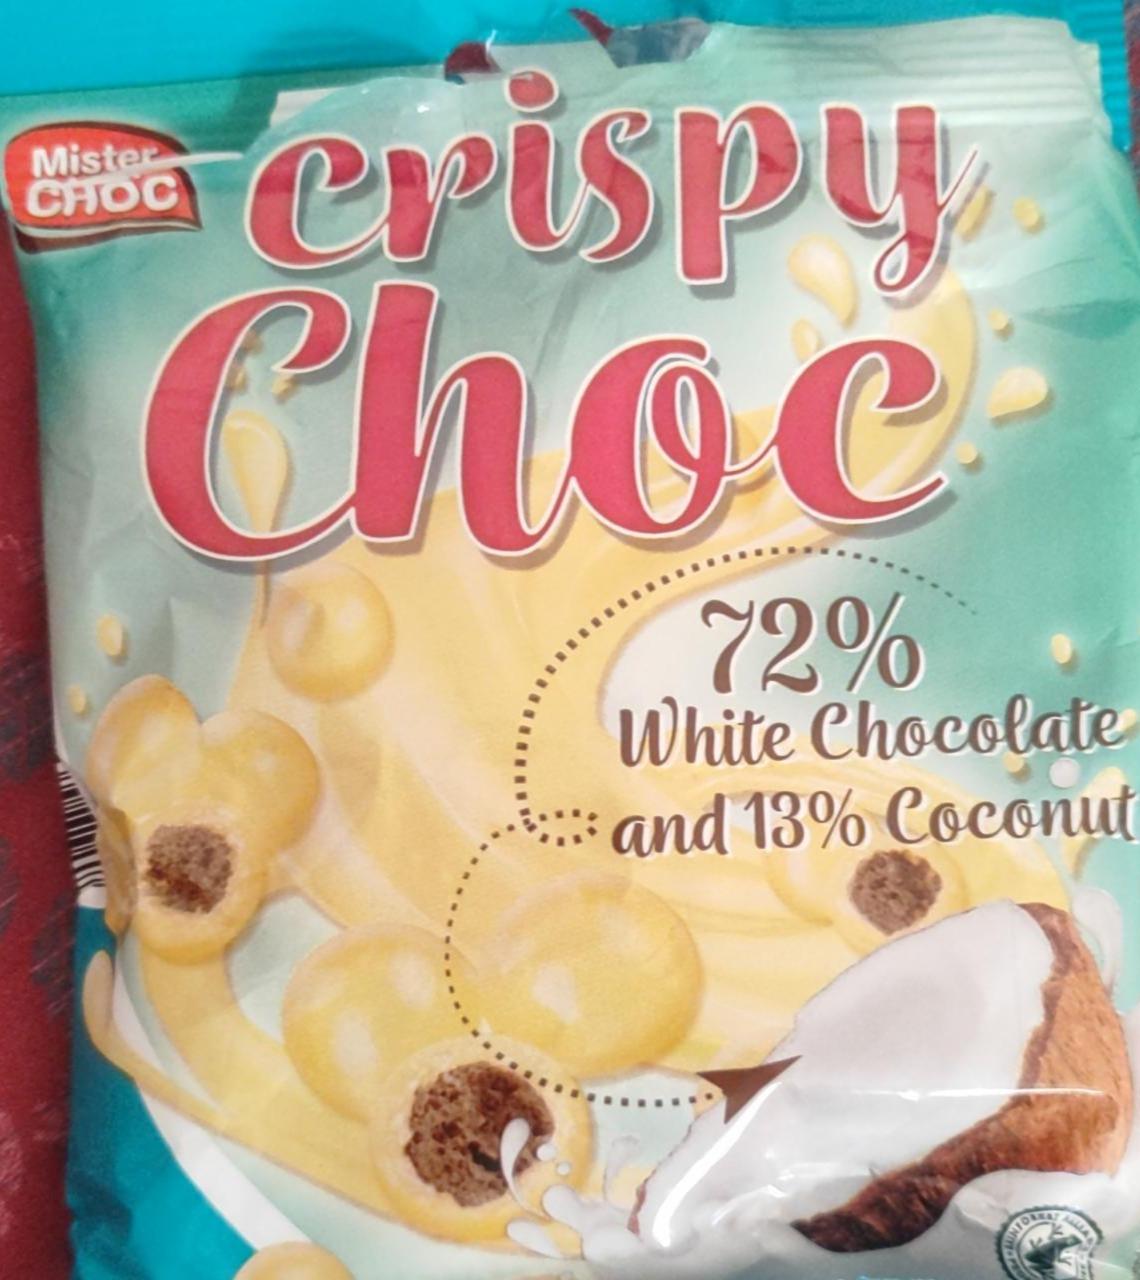 Фото - Chrispy chock with chocolate and 13% coconut Mister Choc